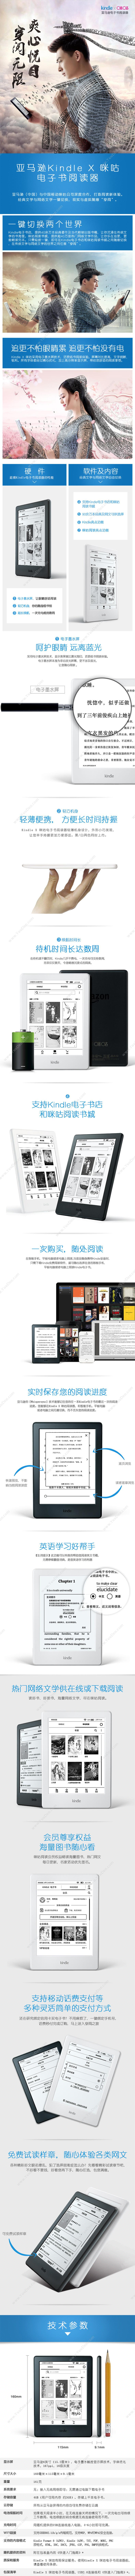 Kindle KINDLE 咪咕X 电子书阅读器 （黑） 平板电脑